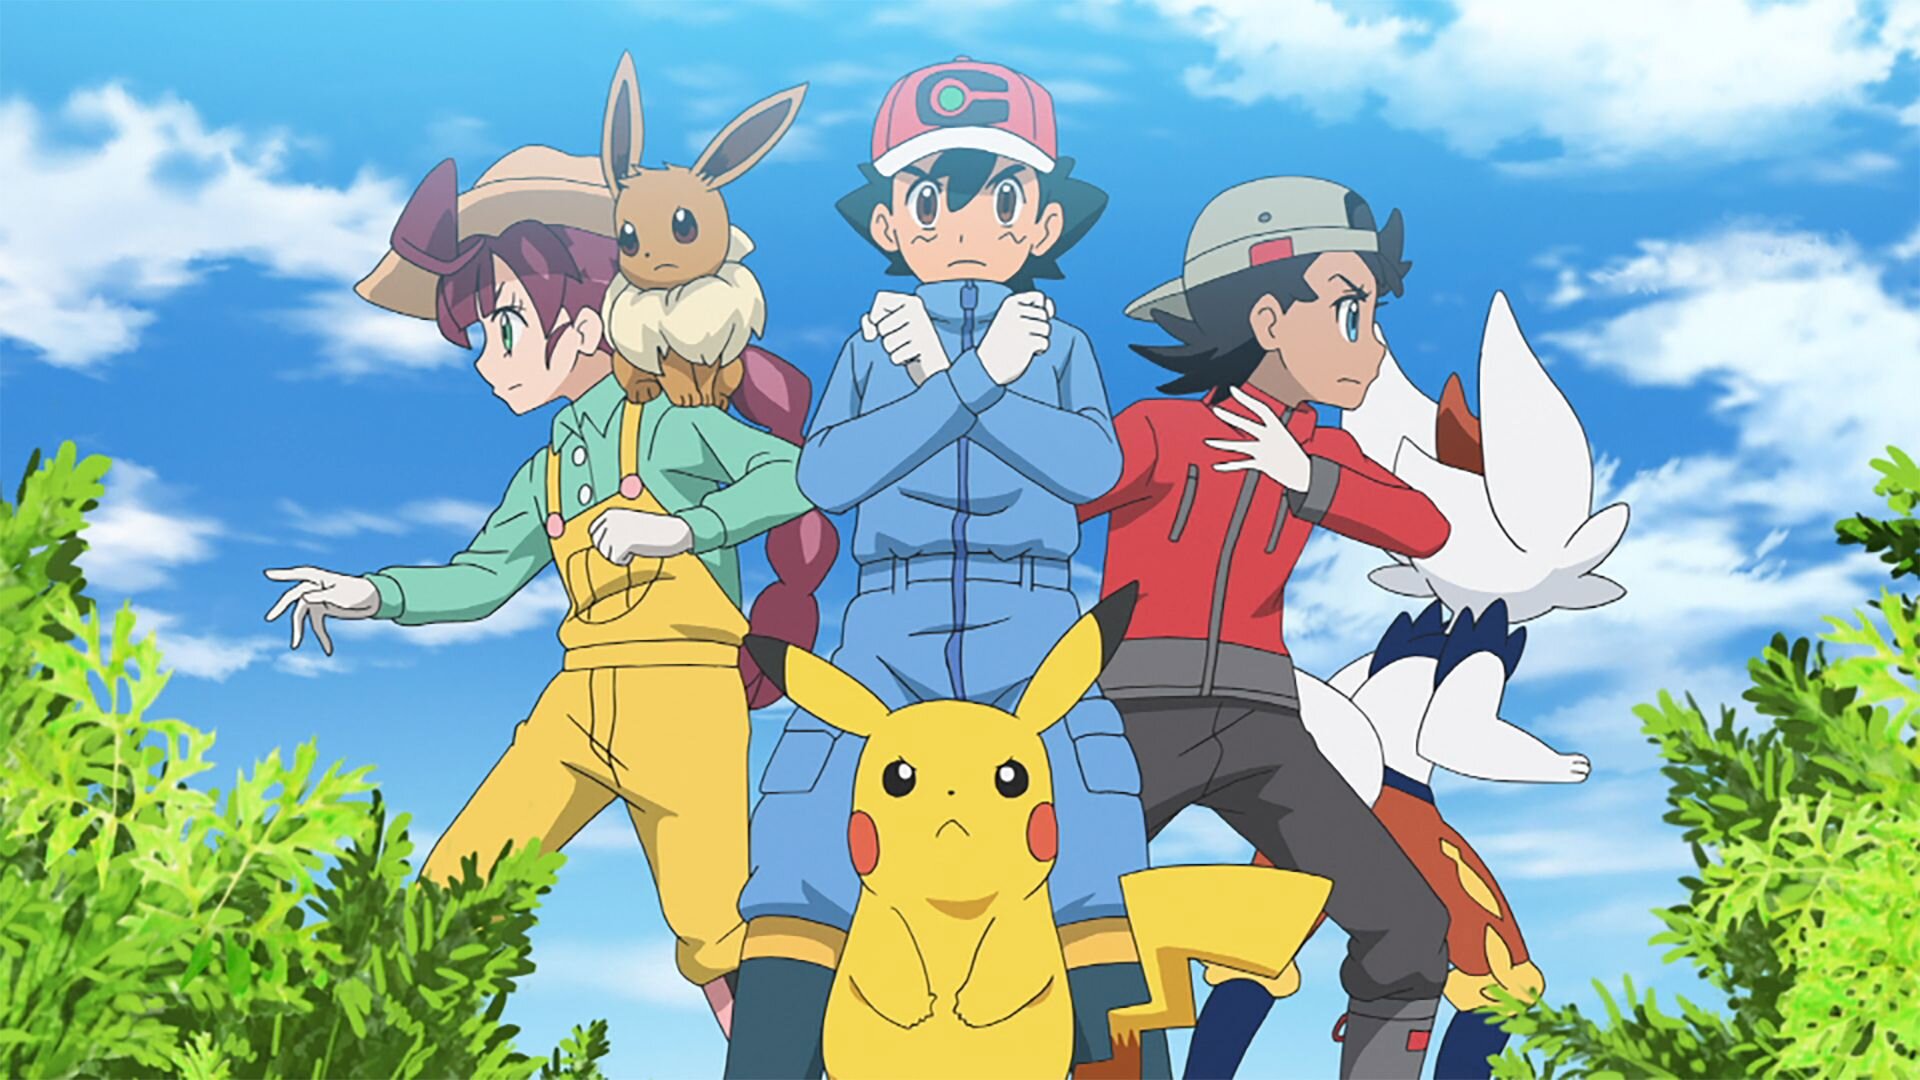 Pokemon 'Aim To Be A Pokemon Master' anime titles leaked for episodes 2 & 3  - Dexerto